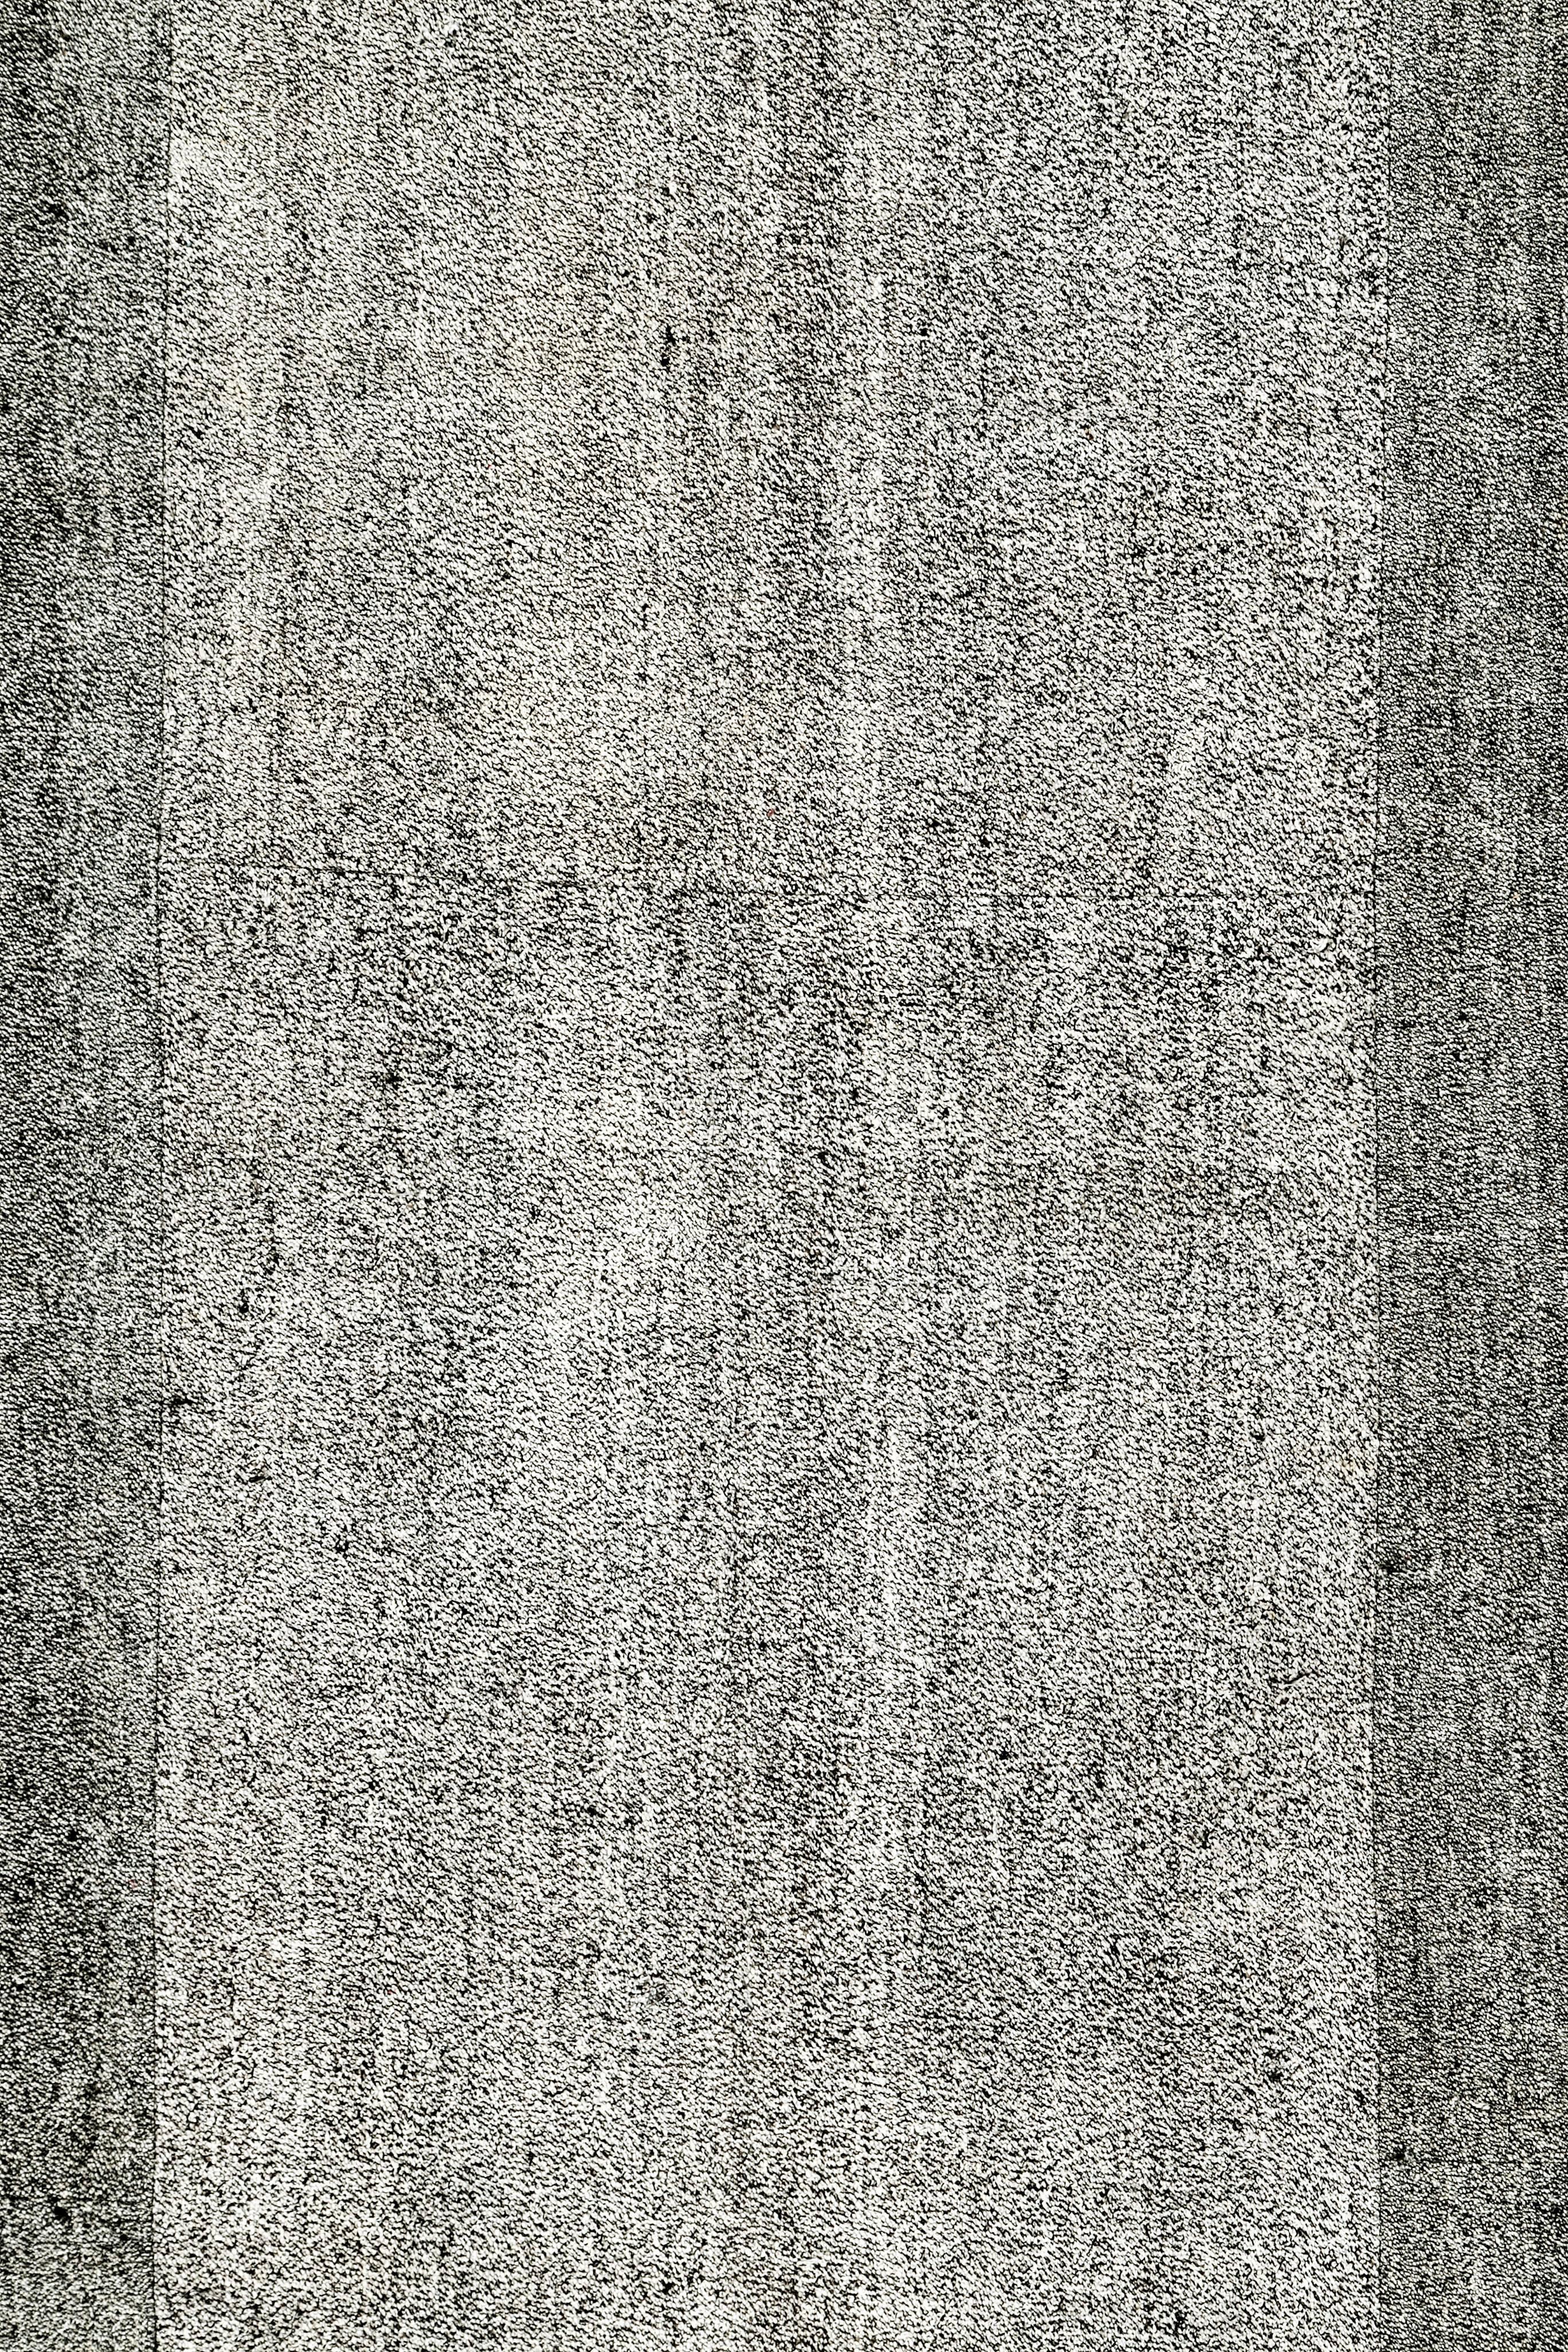 Un tapis Kilim turc vintage tissé à plat de la fin du 20ème siècle.

Mesures : 9' 5